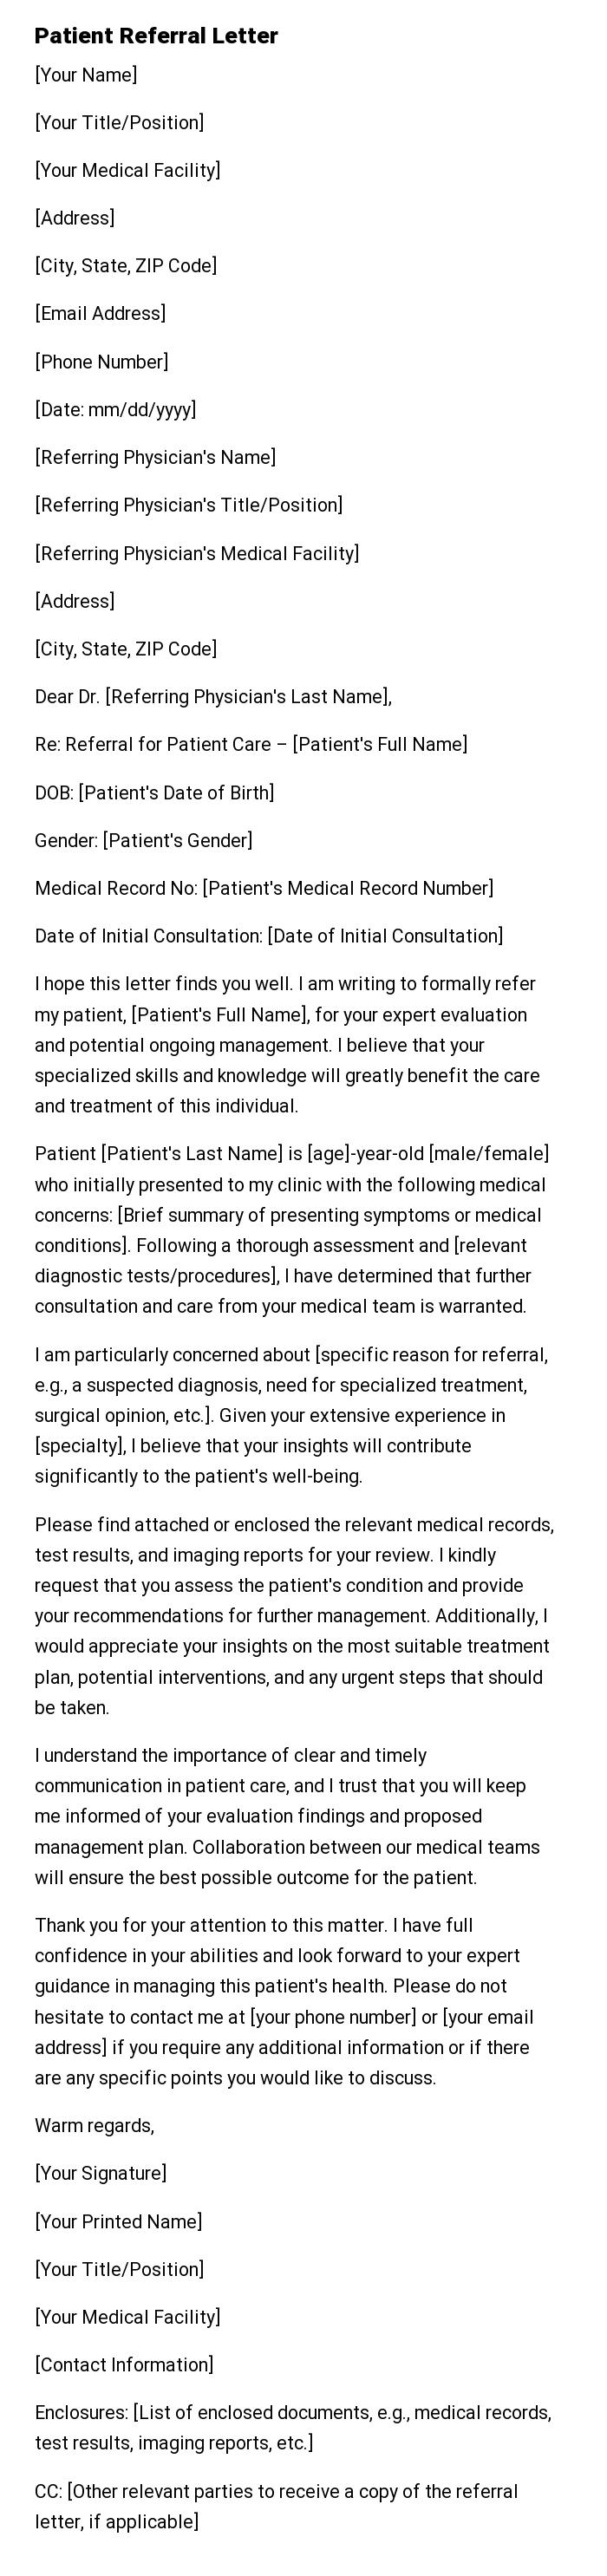 Patient Referral Letter